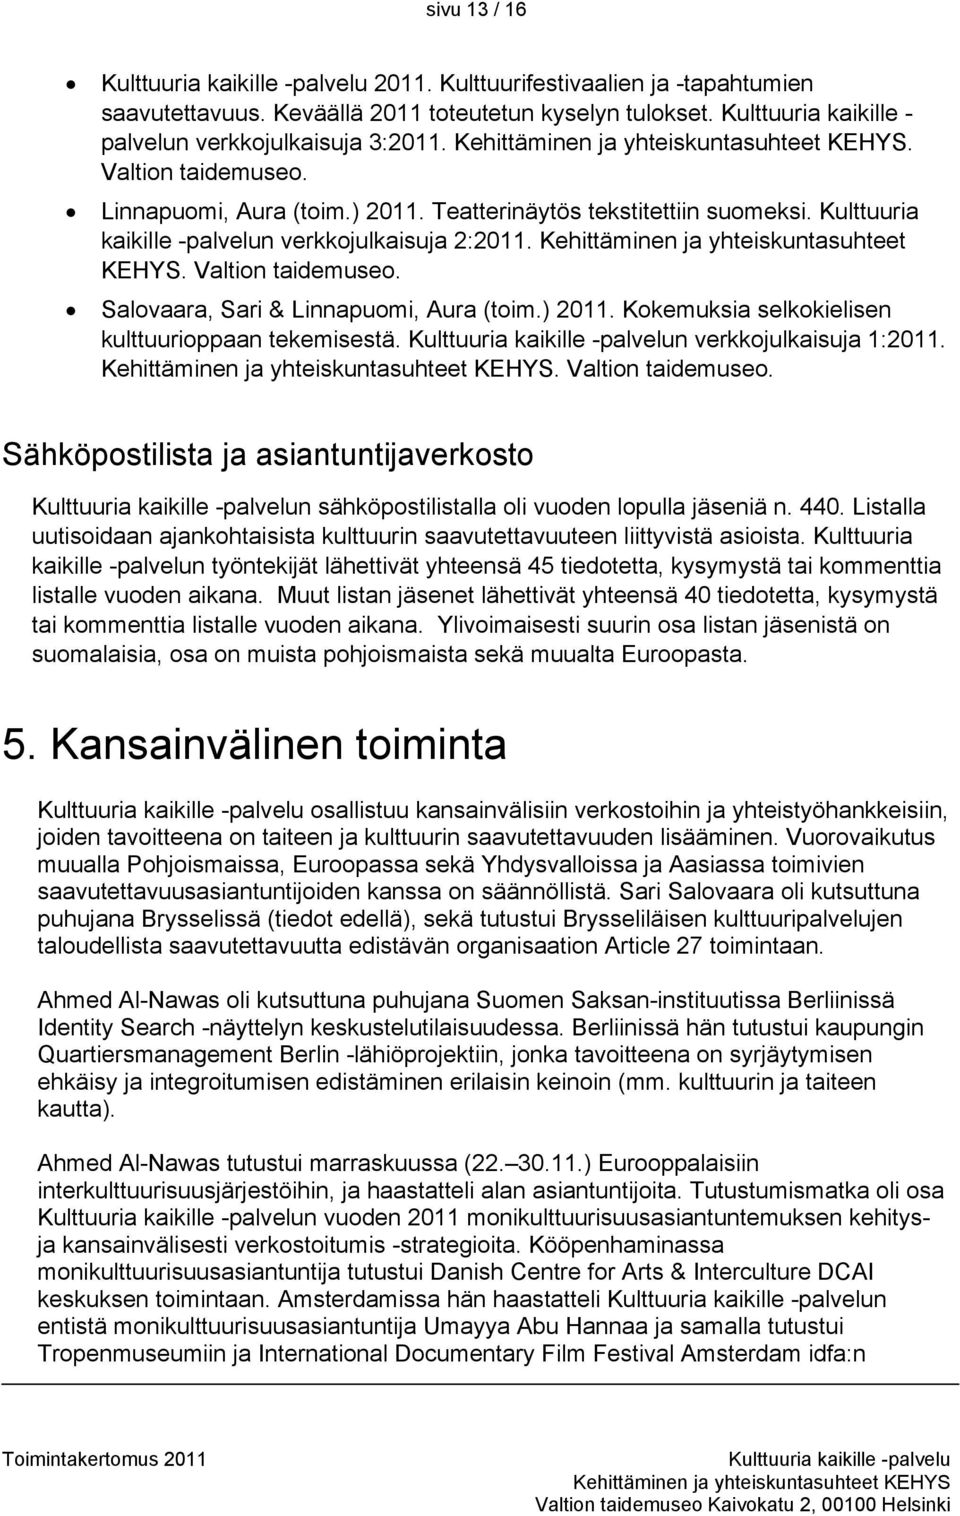 Salovaara, Sari & Linnapuomi, Aura (toim.) 2011. Kokemuksia selkokielisen kulttuurioppaan tekemisestä. n verkkojulkaisuja 1:2011.. Valtion taidemuseo.